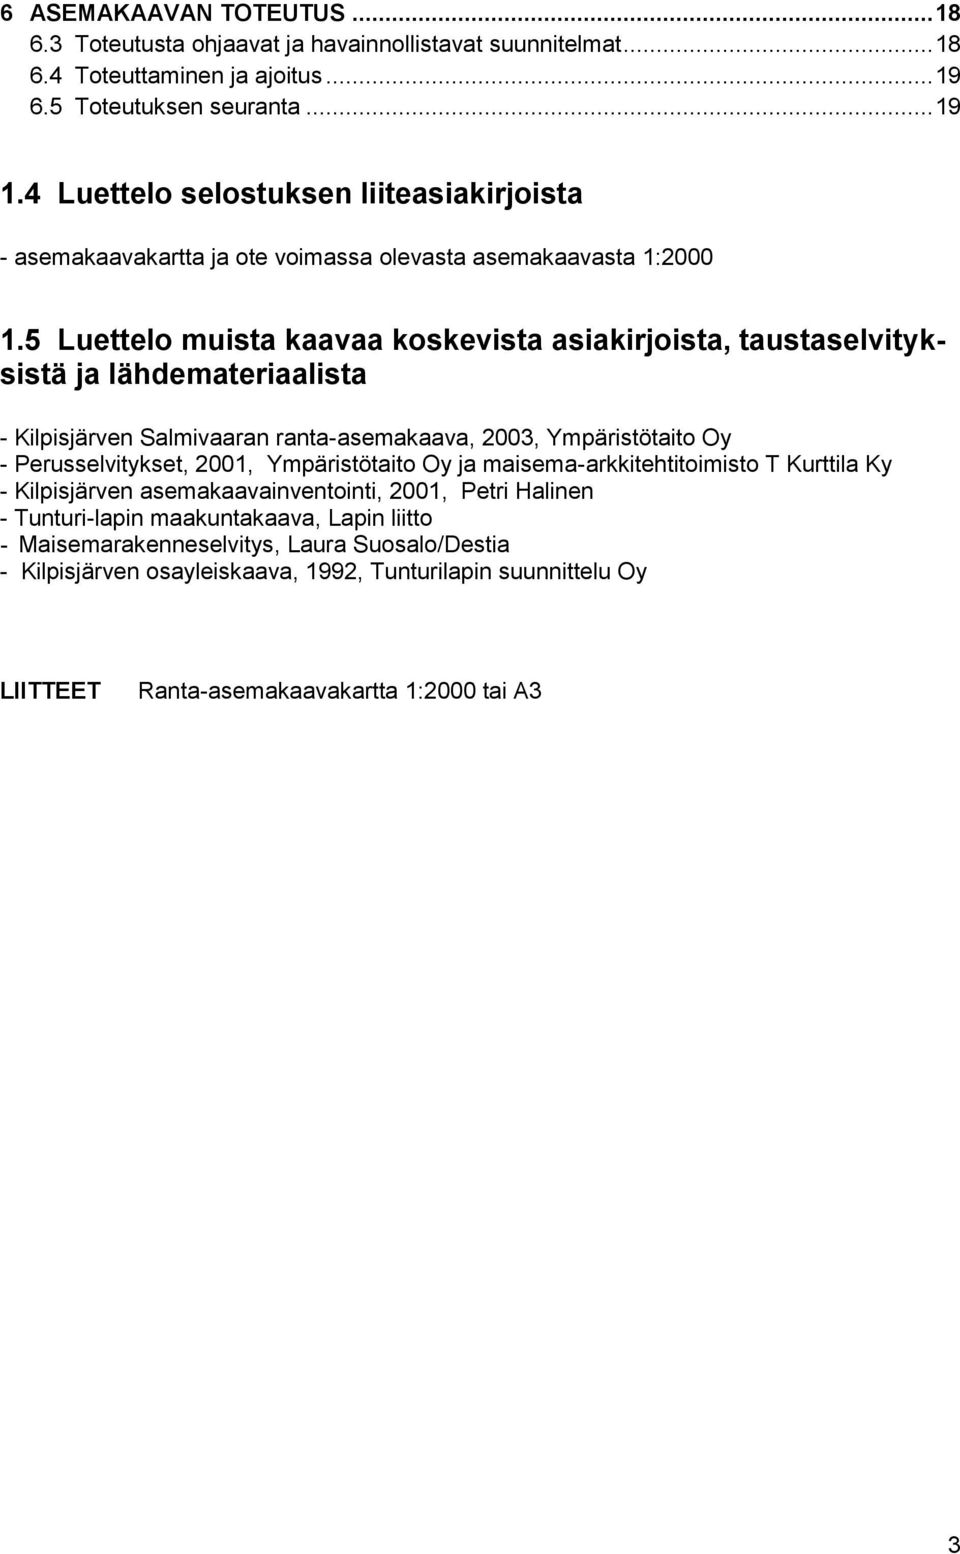 5 Luettelo muista kaavaa koskevista asiakirjoista, taustaselvityksistä ja lähdemateriaalista - Kilpisjärven Salmivaaran ranta-asemakaava, 2003, Ympäristötaito Oy - Perusselvitykset, 2001,